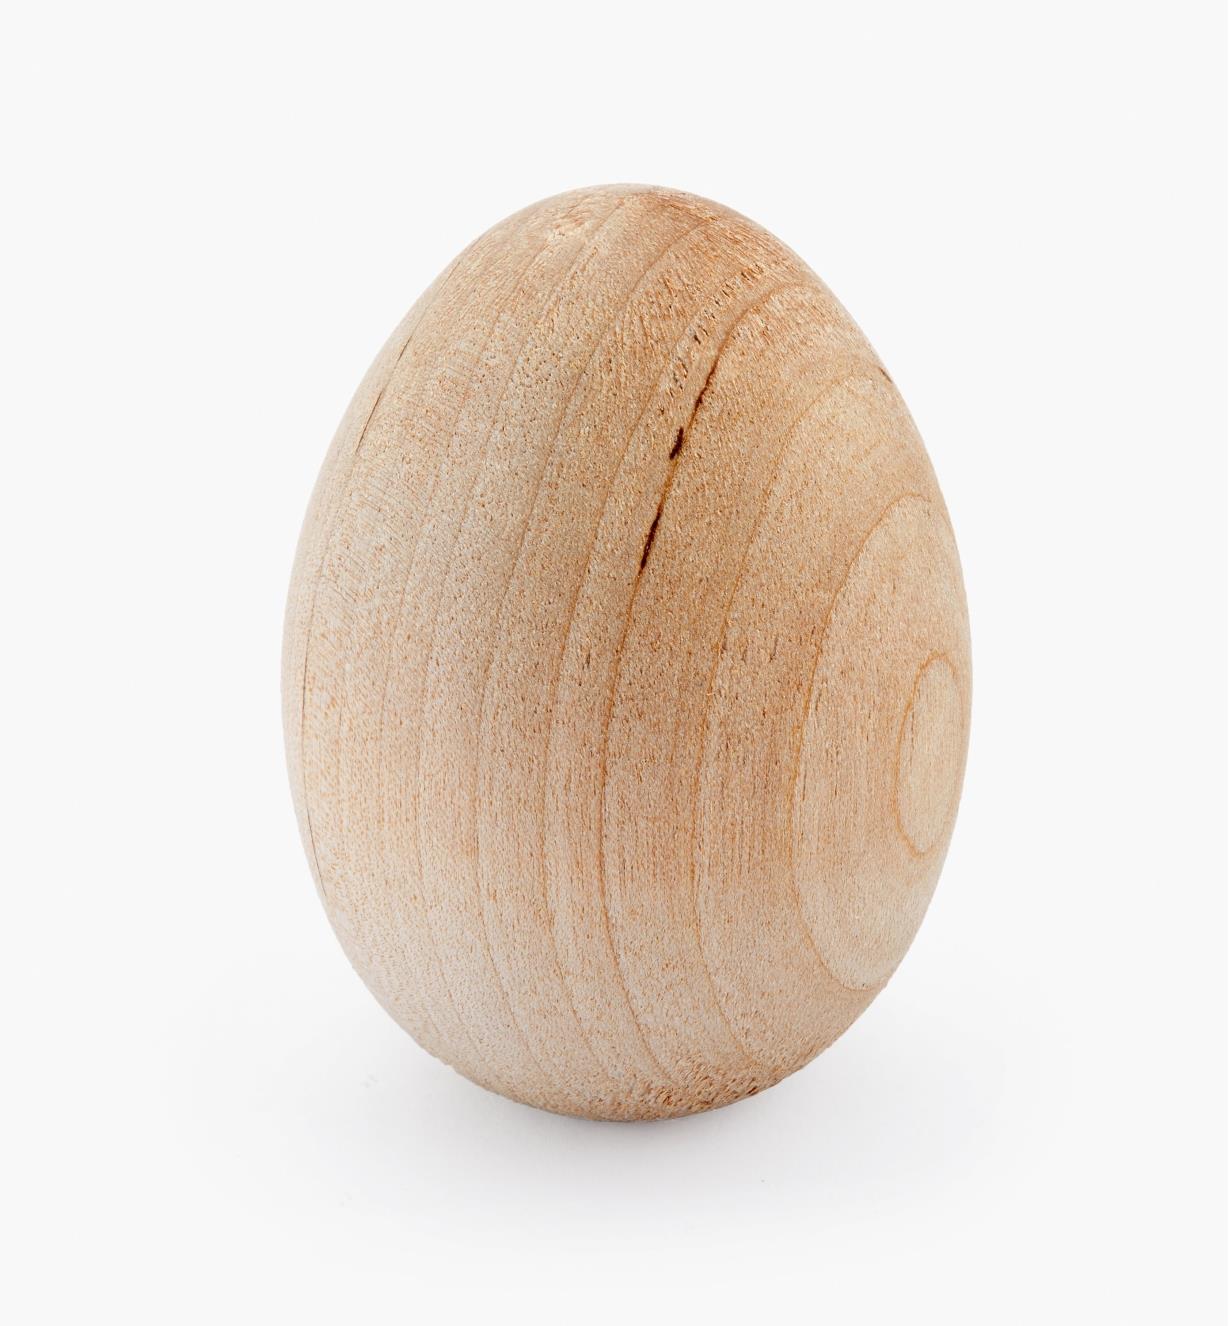 41K2725 - Hen Egg, 1 3/4"x2 1/2"